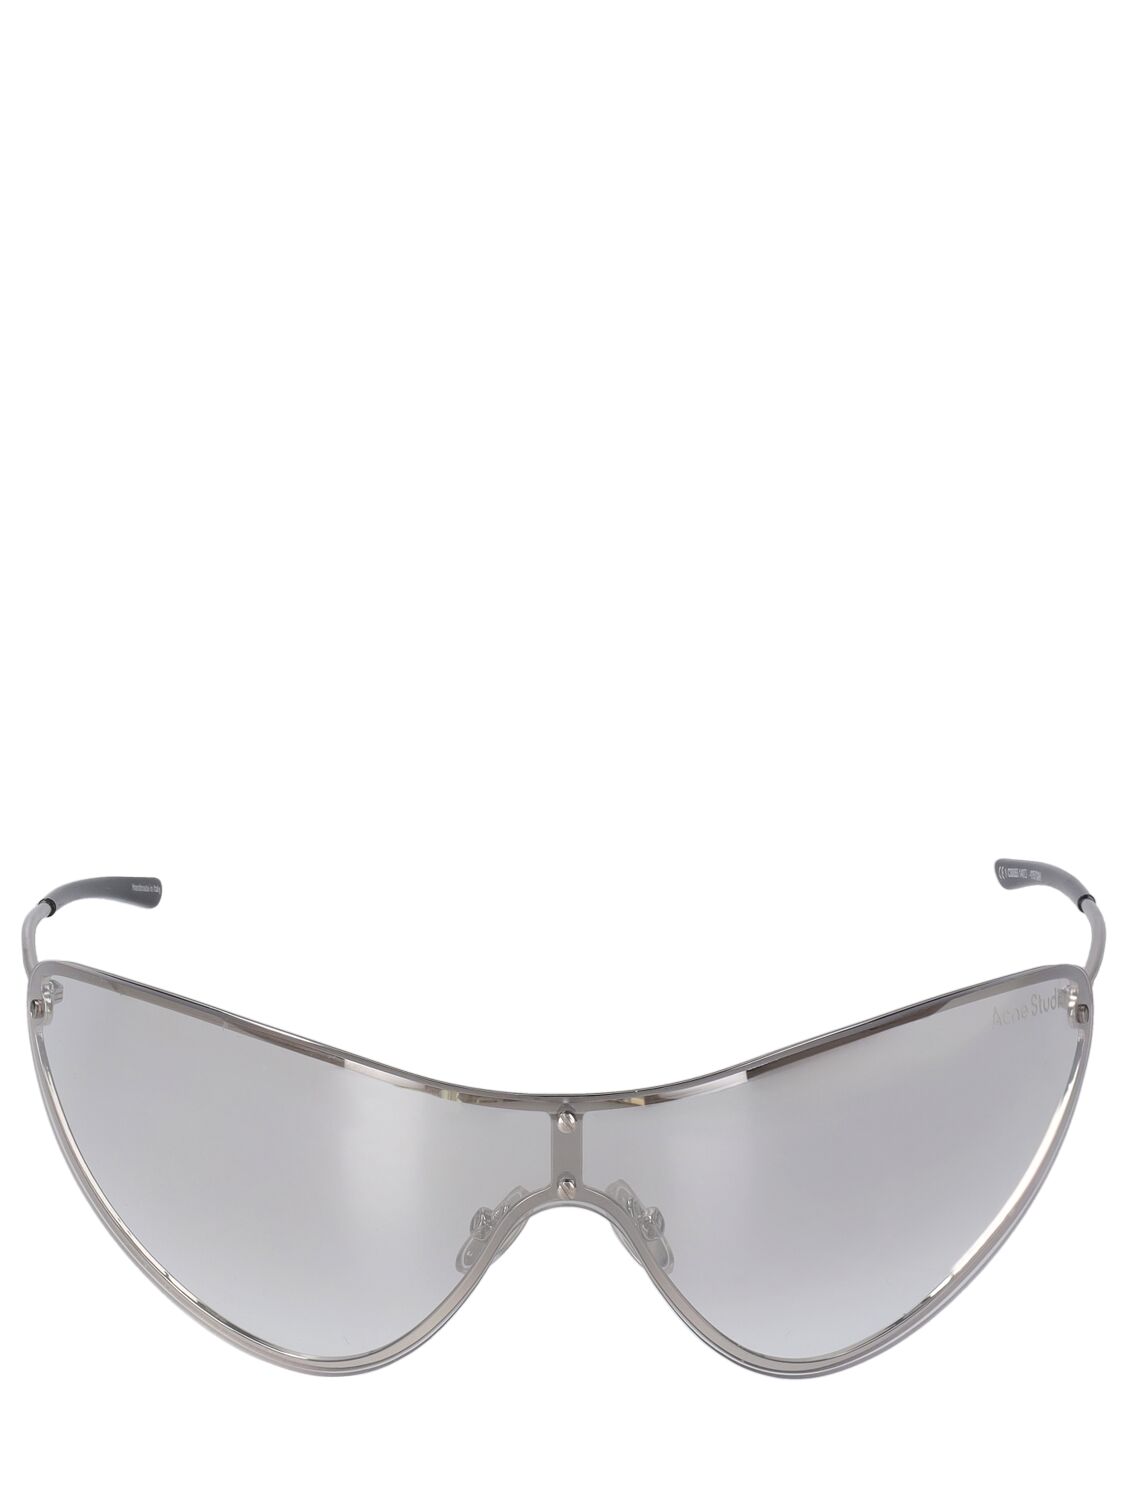 Acne Studios Antus Mask Metal Sunglasses In Metallic